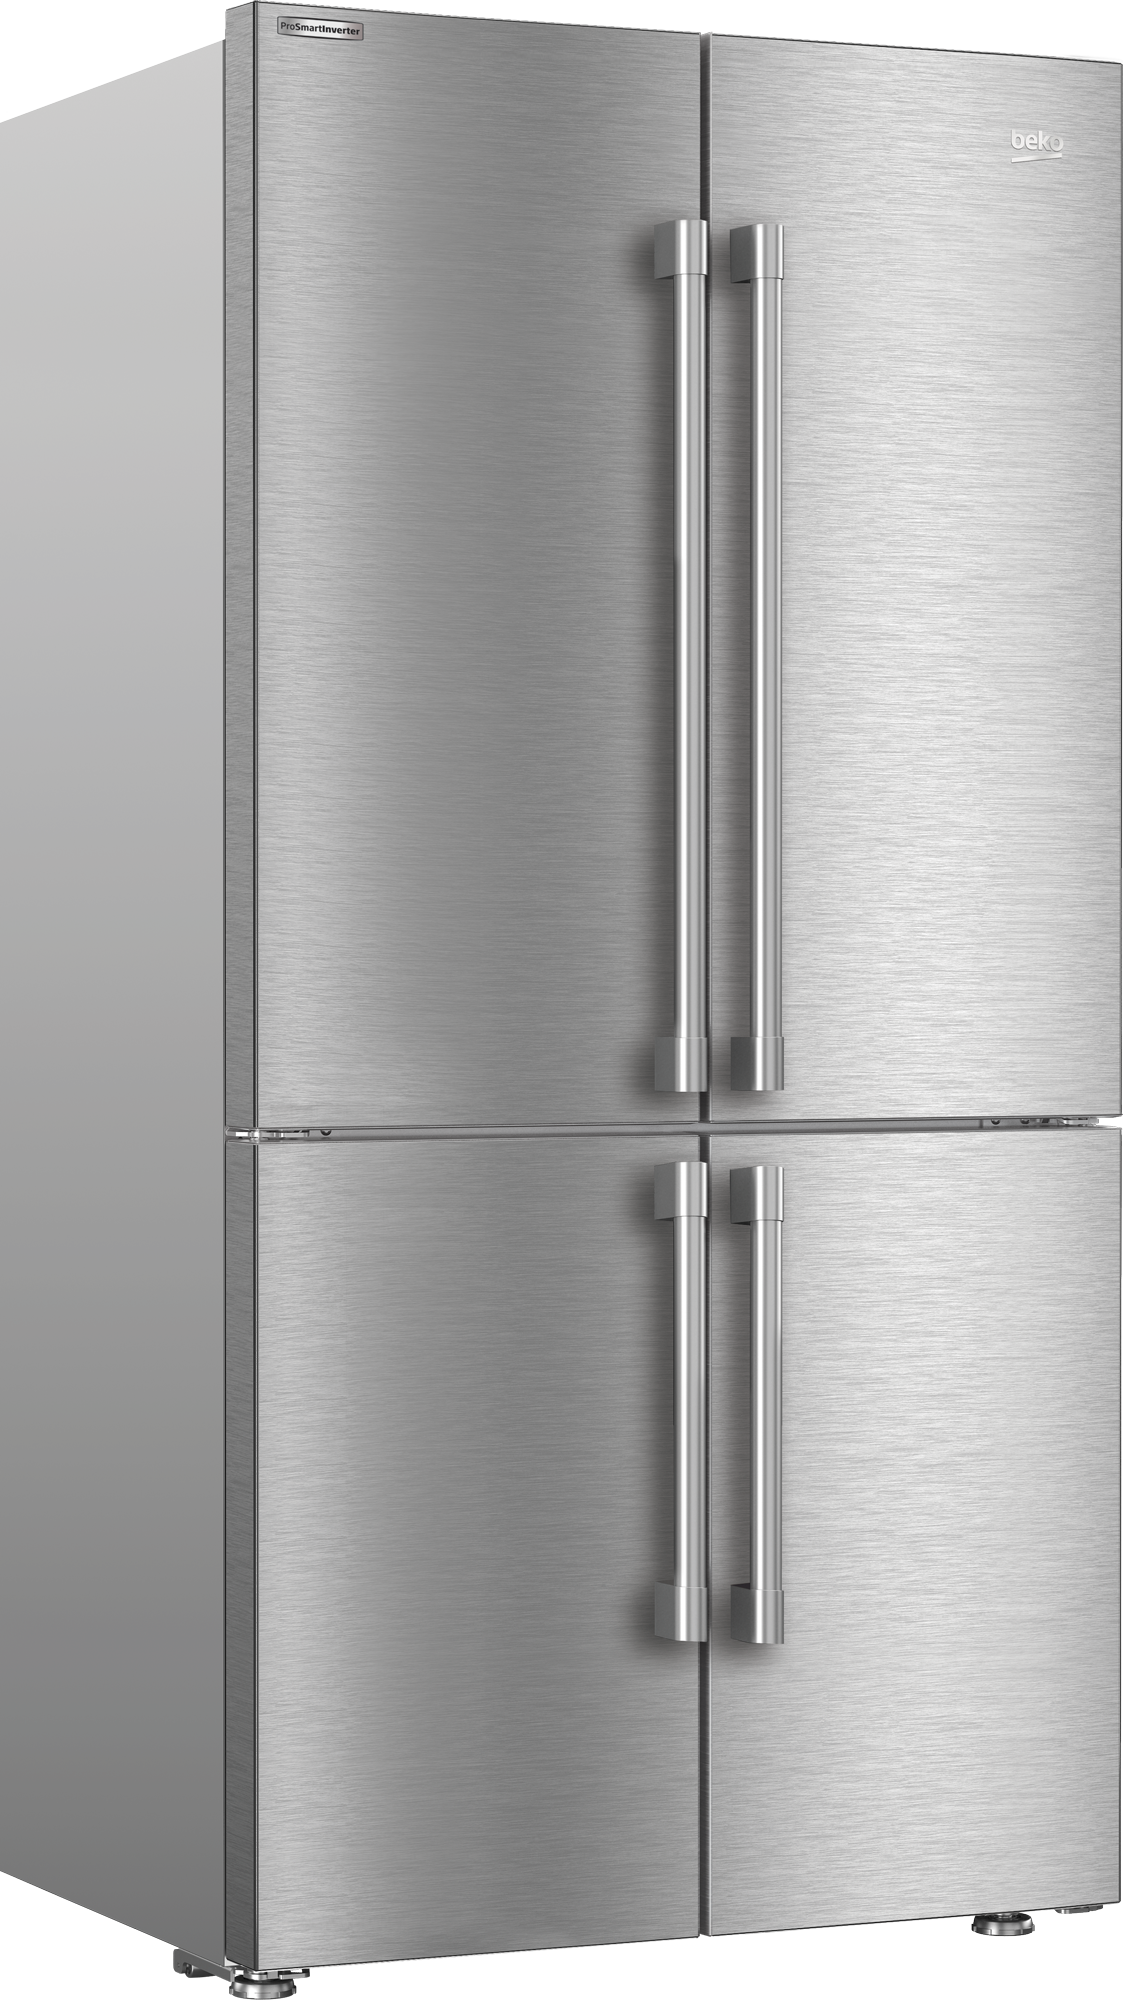 Beko Bffd3622ss Refrigerator And Freezer Handles 7293749581 